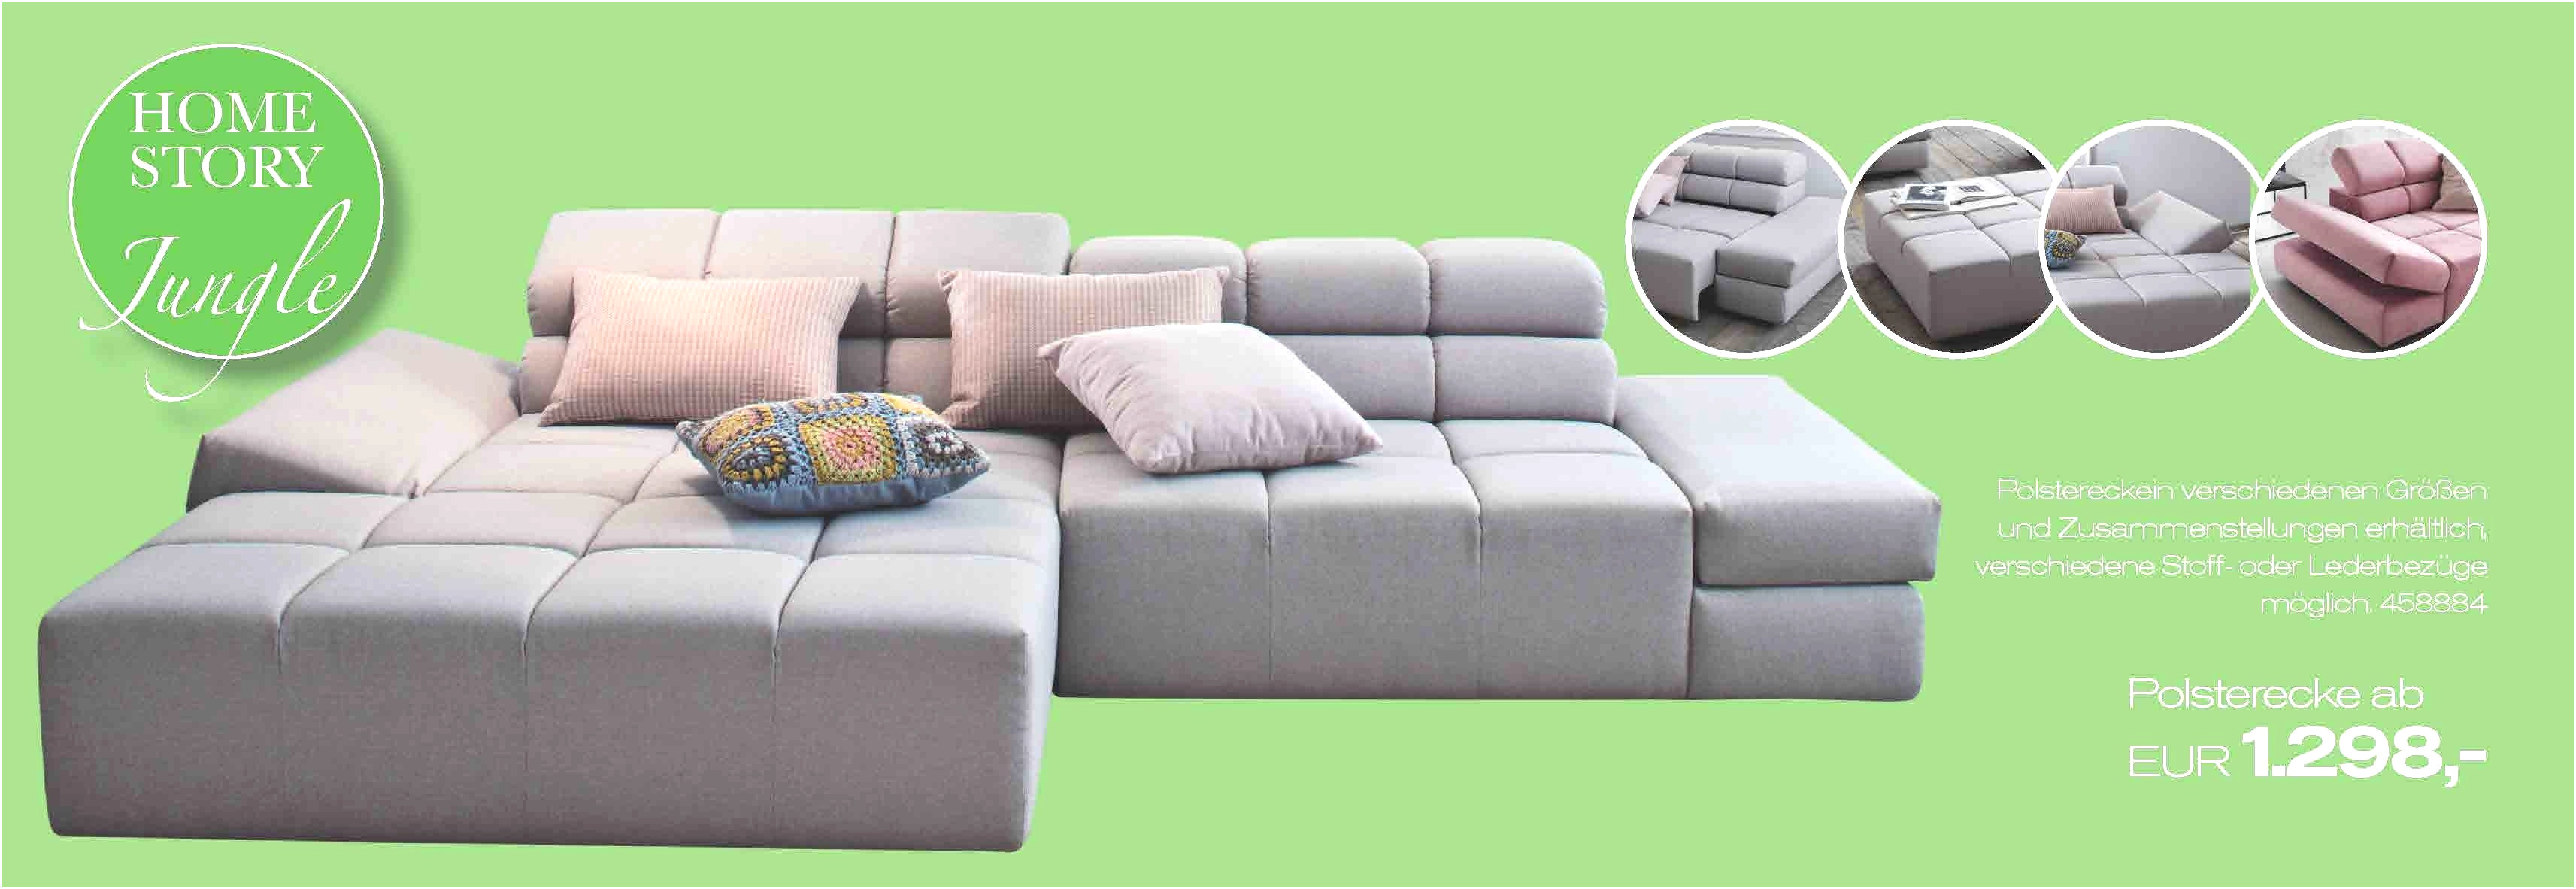 ecksofa ikea best of 50 elegant sofa armrest covers ikea 50 s